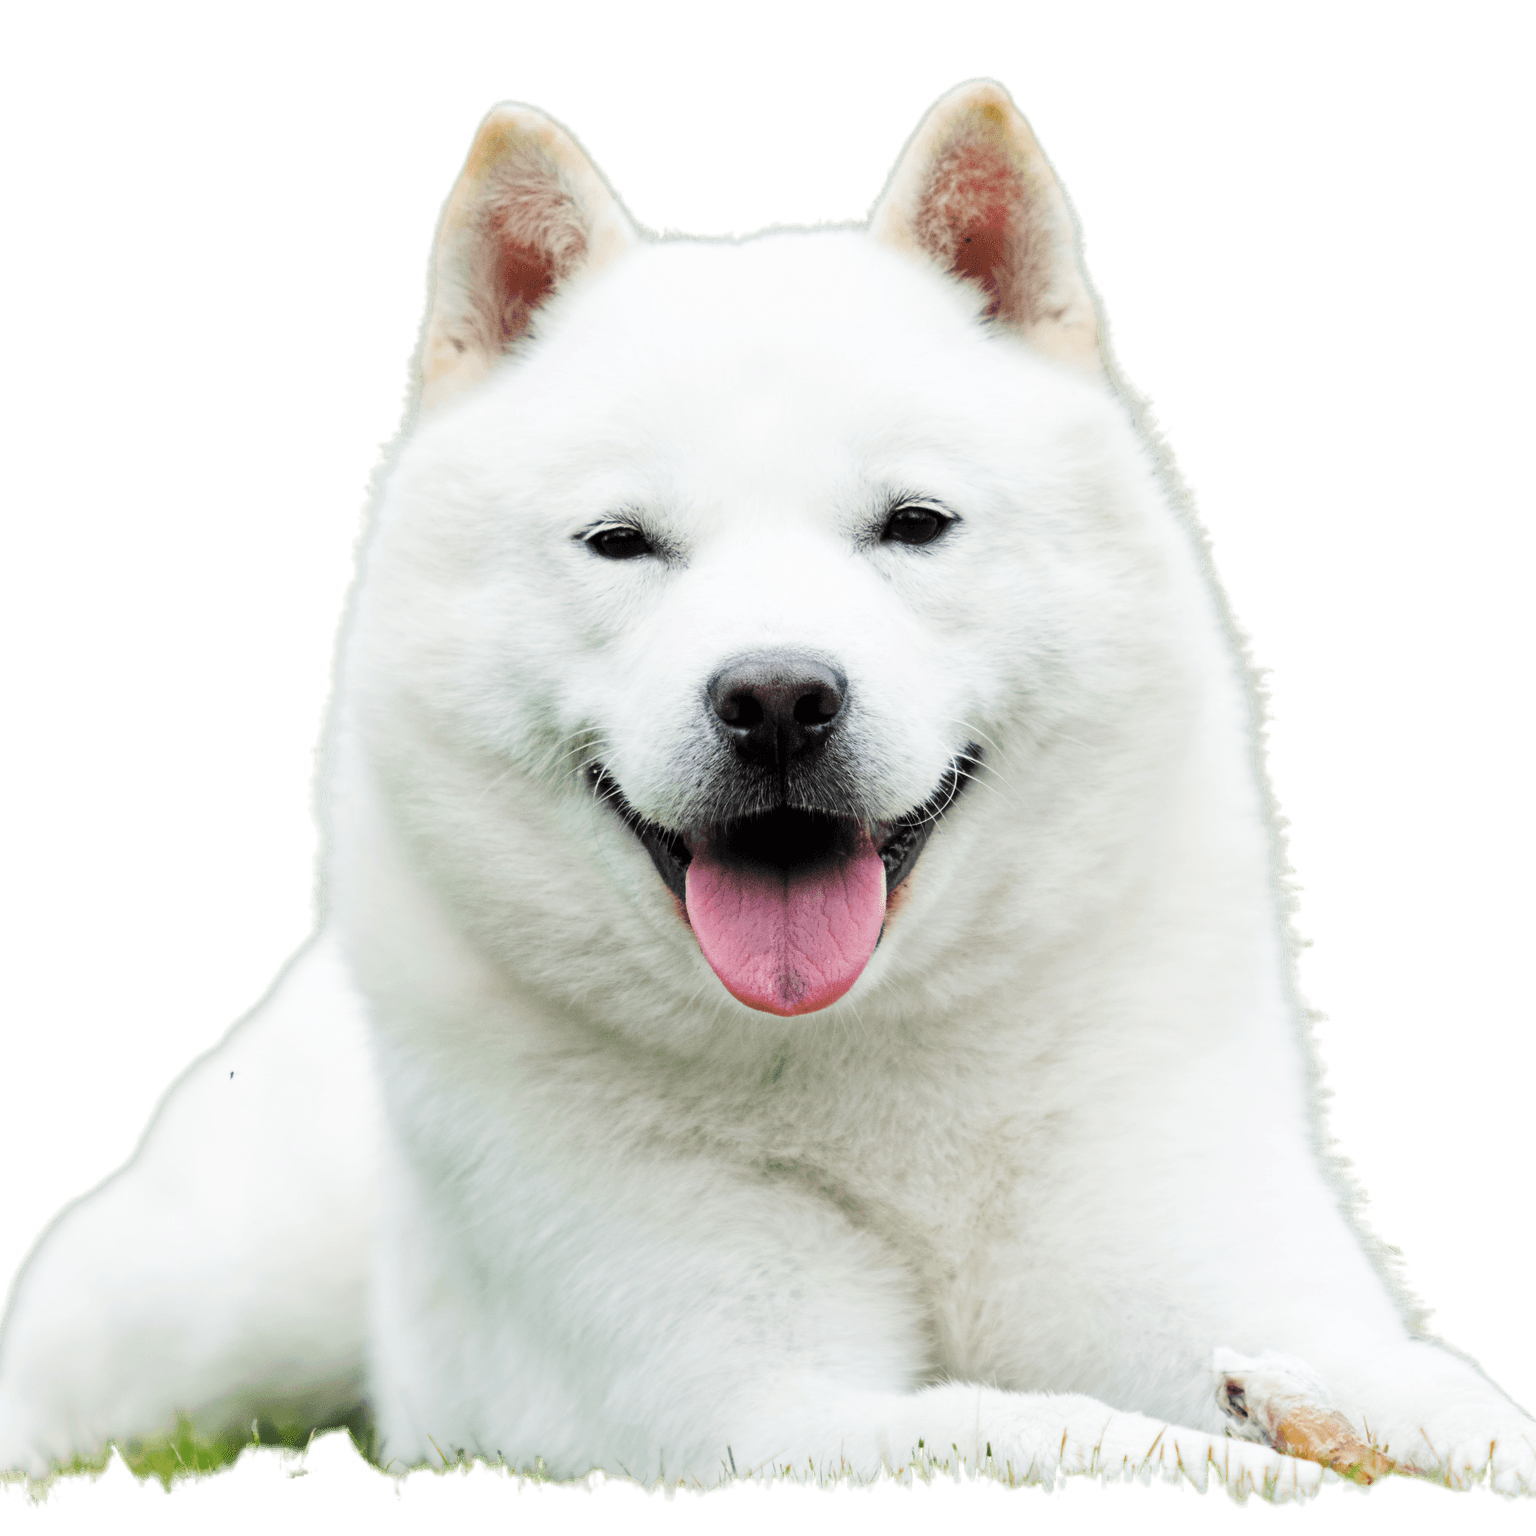 Japanese Hokkaido dog smiling with tongue